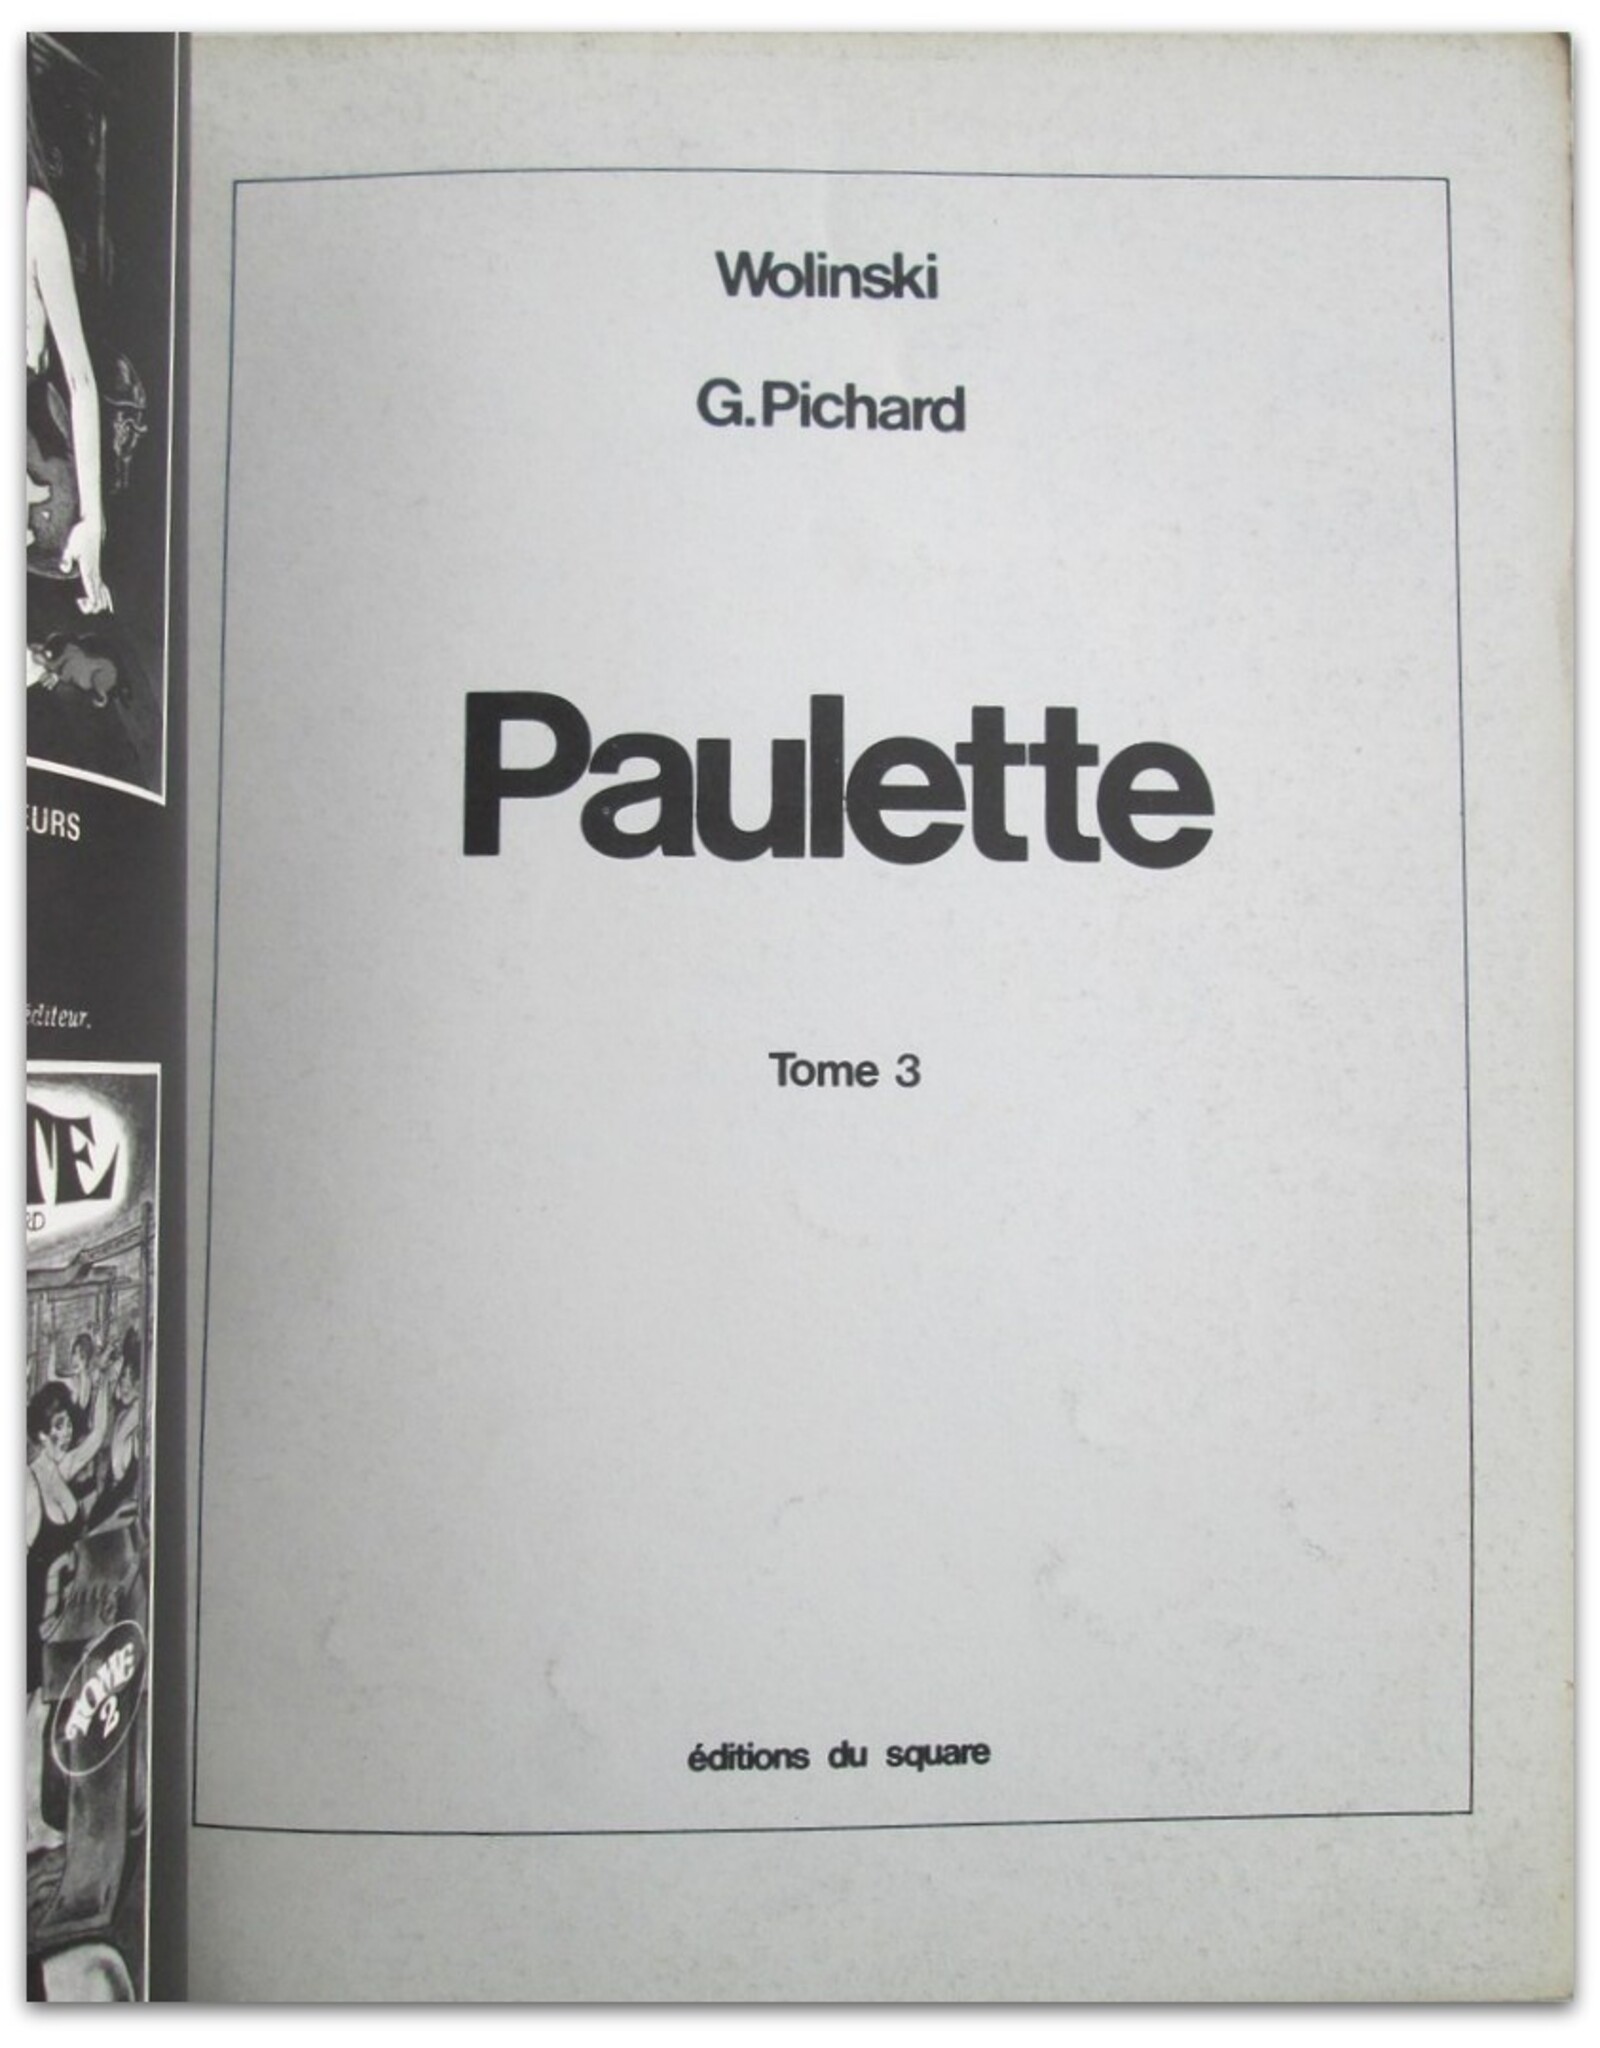 G. Pichard & Wolinksi - Paulette Tome 3 [Le mariage de Paulette]